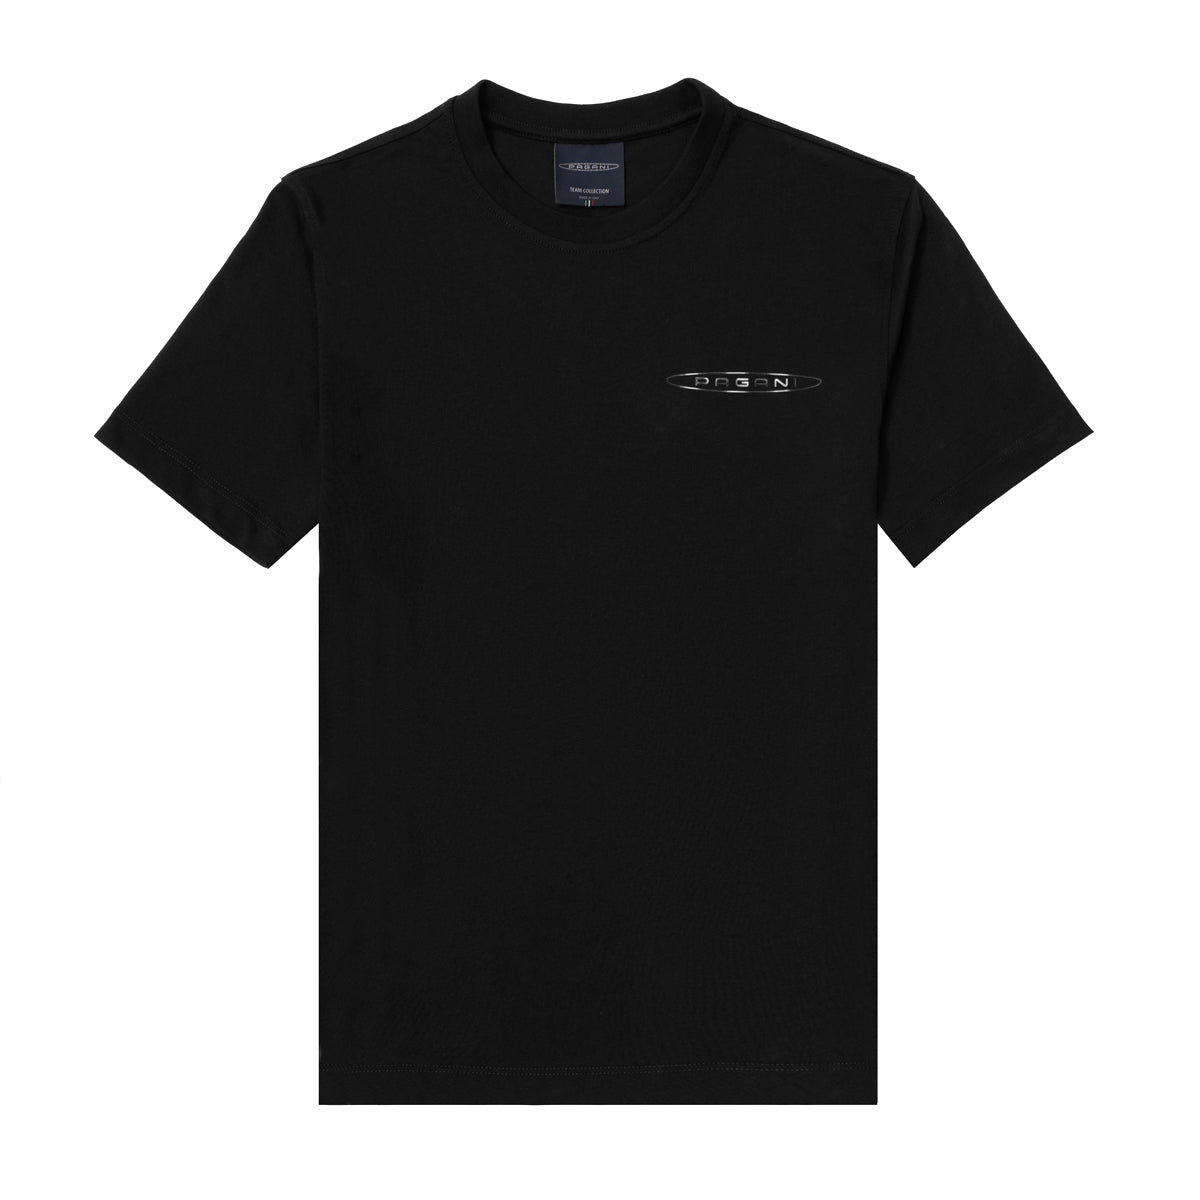 Herren-T-Shirt Mit Seitlichem Logo Schwarz | Team Collection